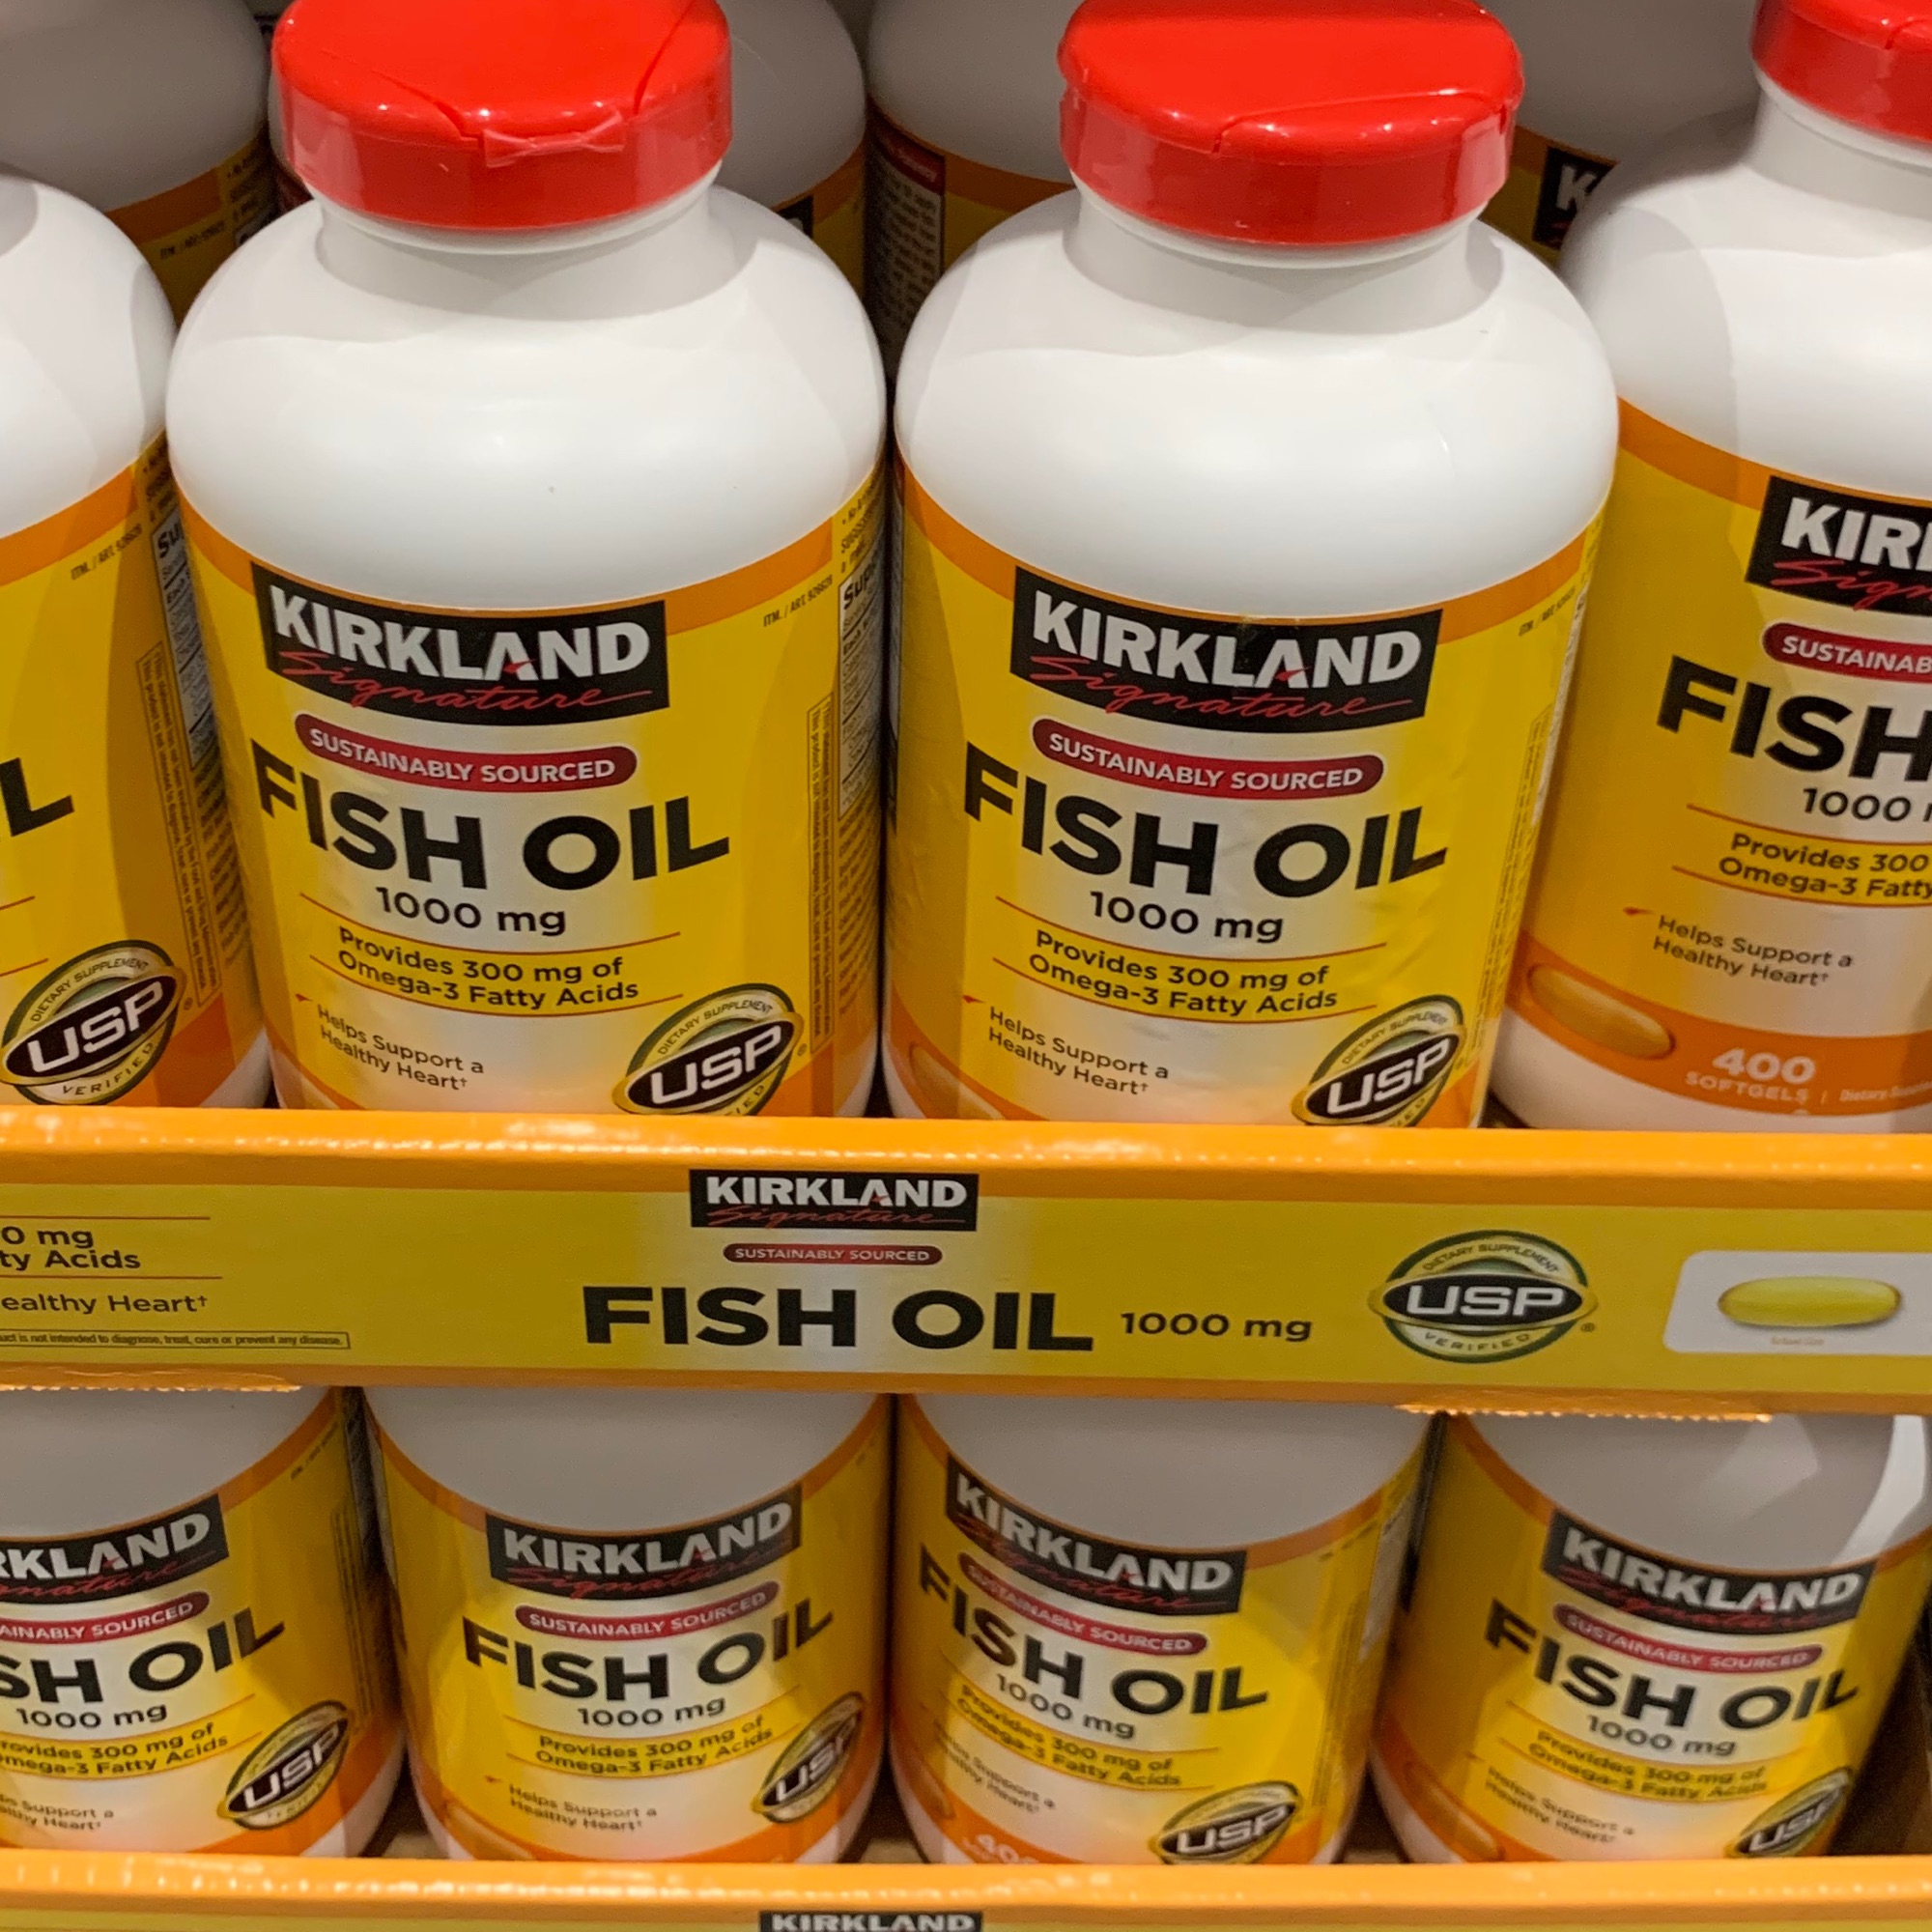 Kirkland Signature Fish Oil - 1,000 mg - 400 Softgels 